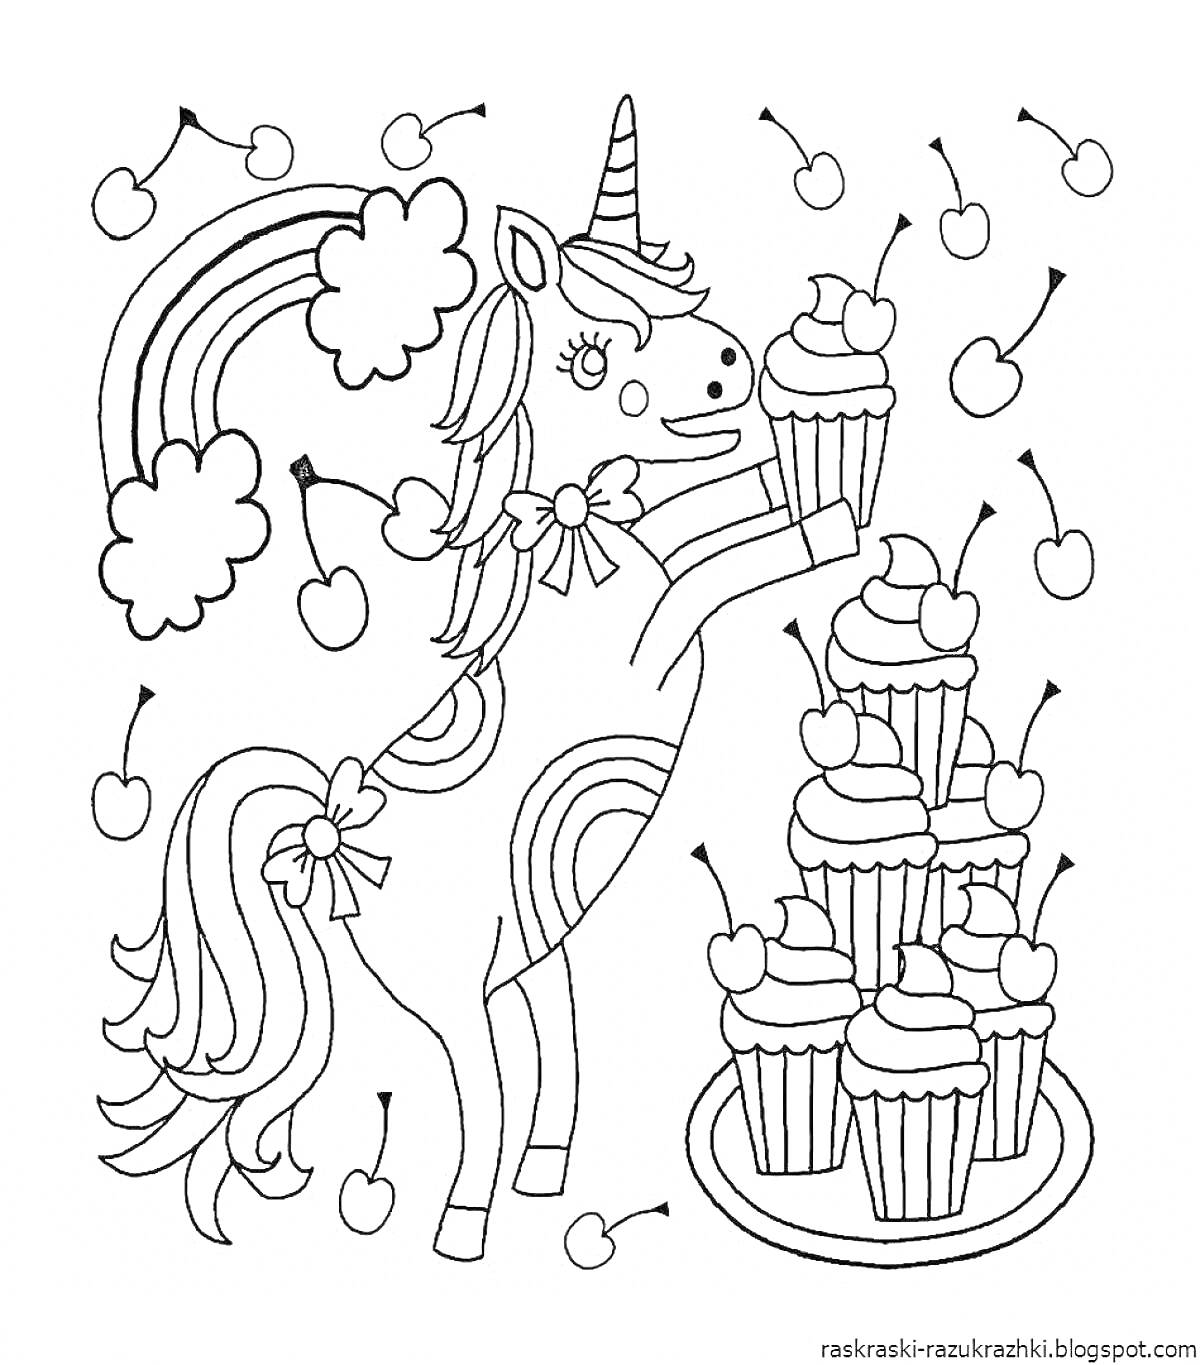 Раскраска Единорог с радугой, вишнями и пирожными